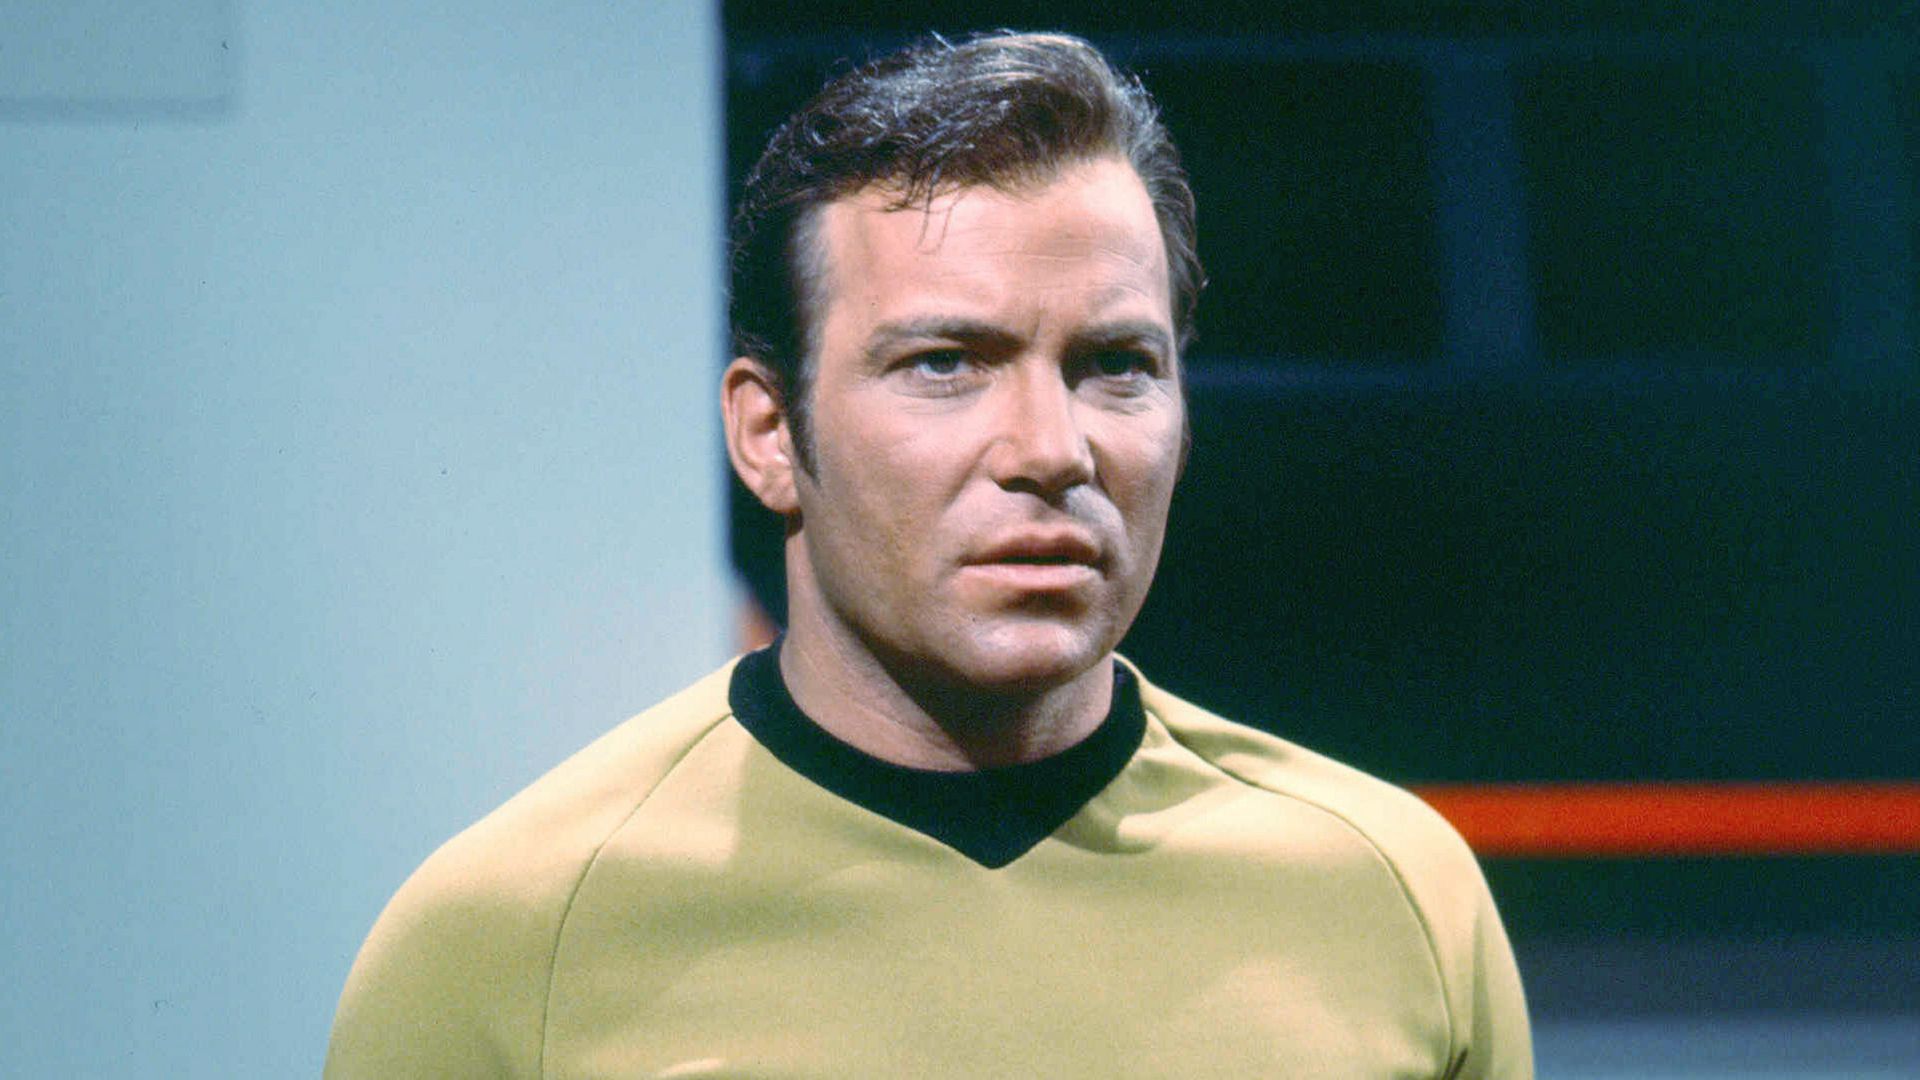 William Shatner as Captain James T. Kirk of the Starship Enterprise